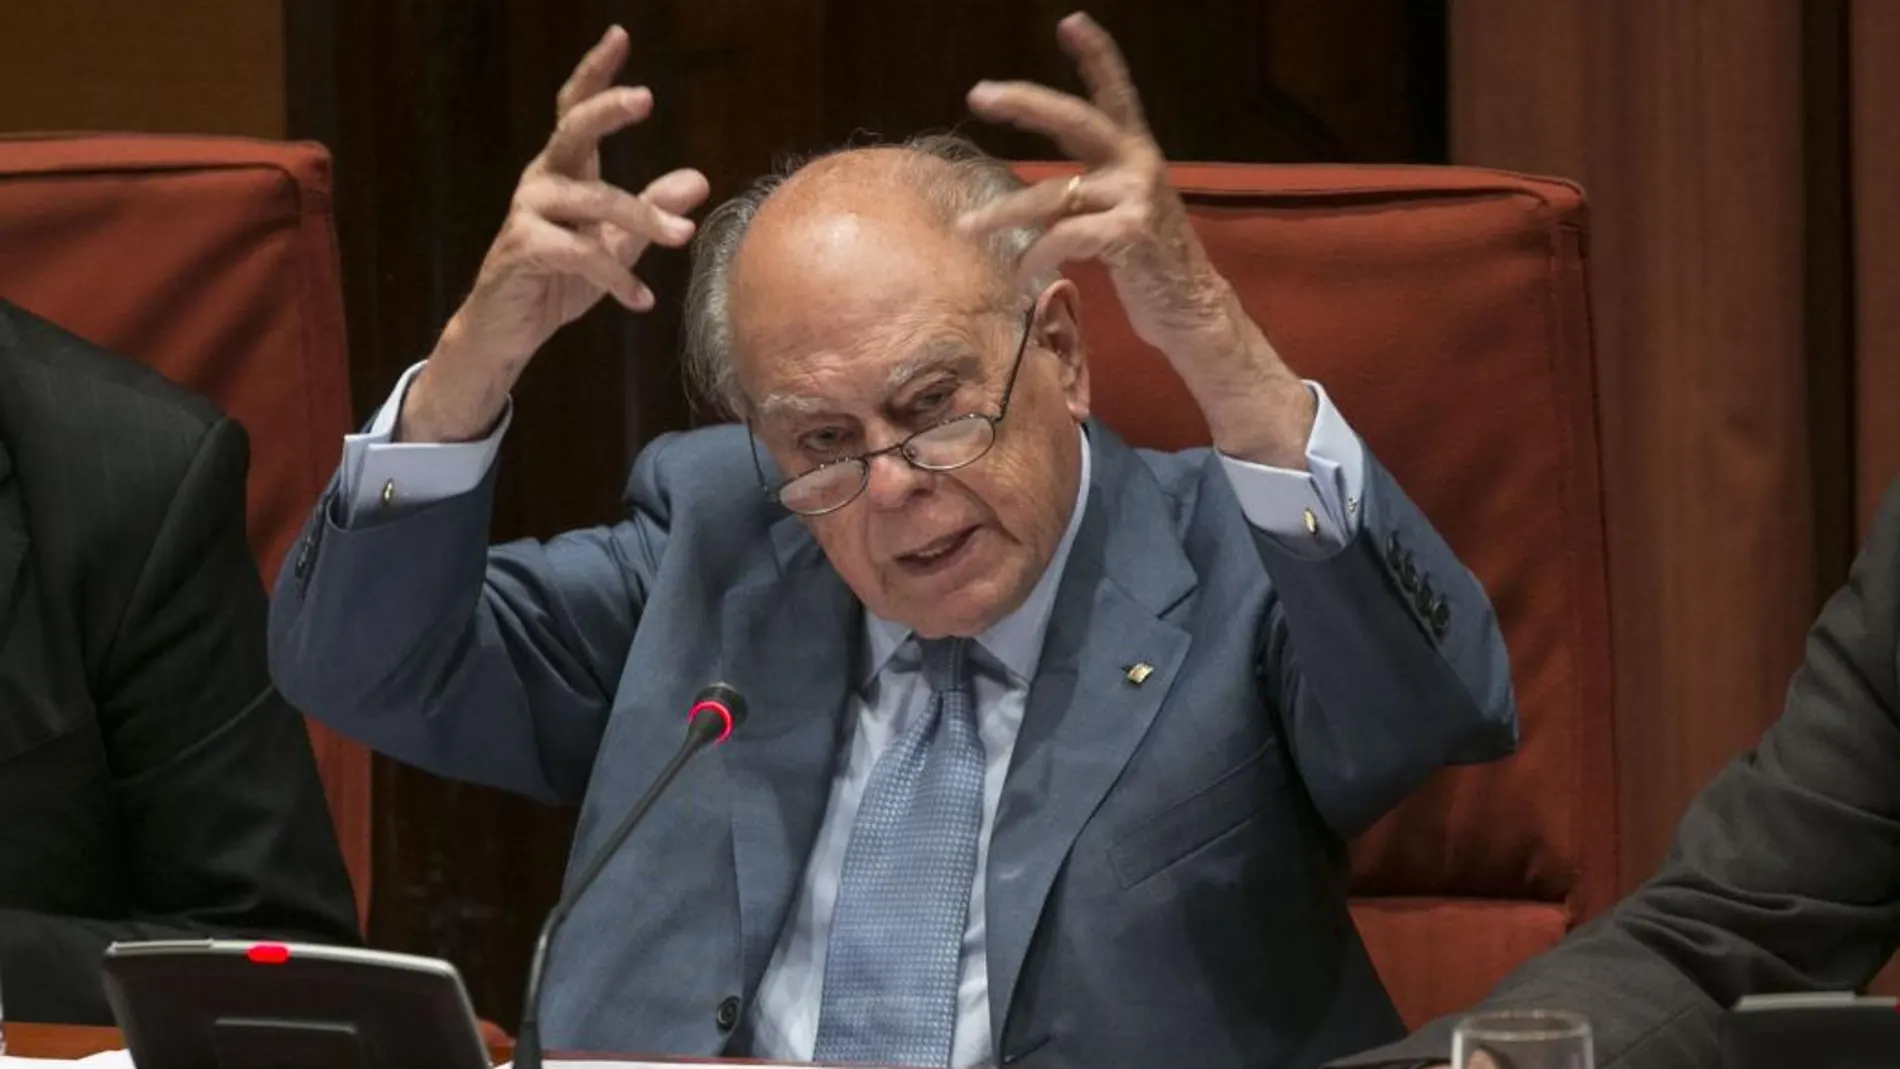 El ex presidente catalán, durante su comparecencia en el Parlament para explicar sus cuentas en el extranjero